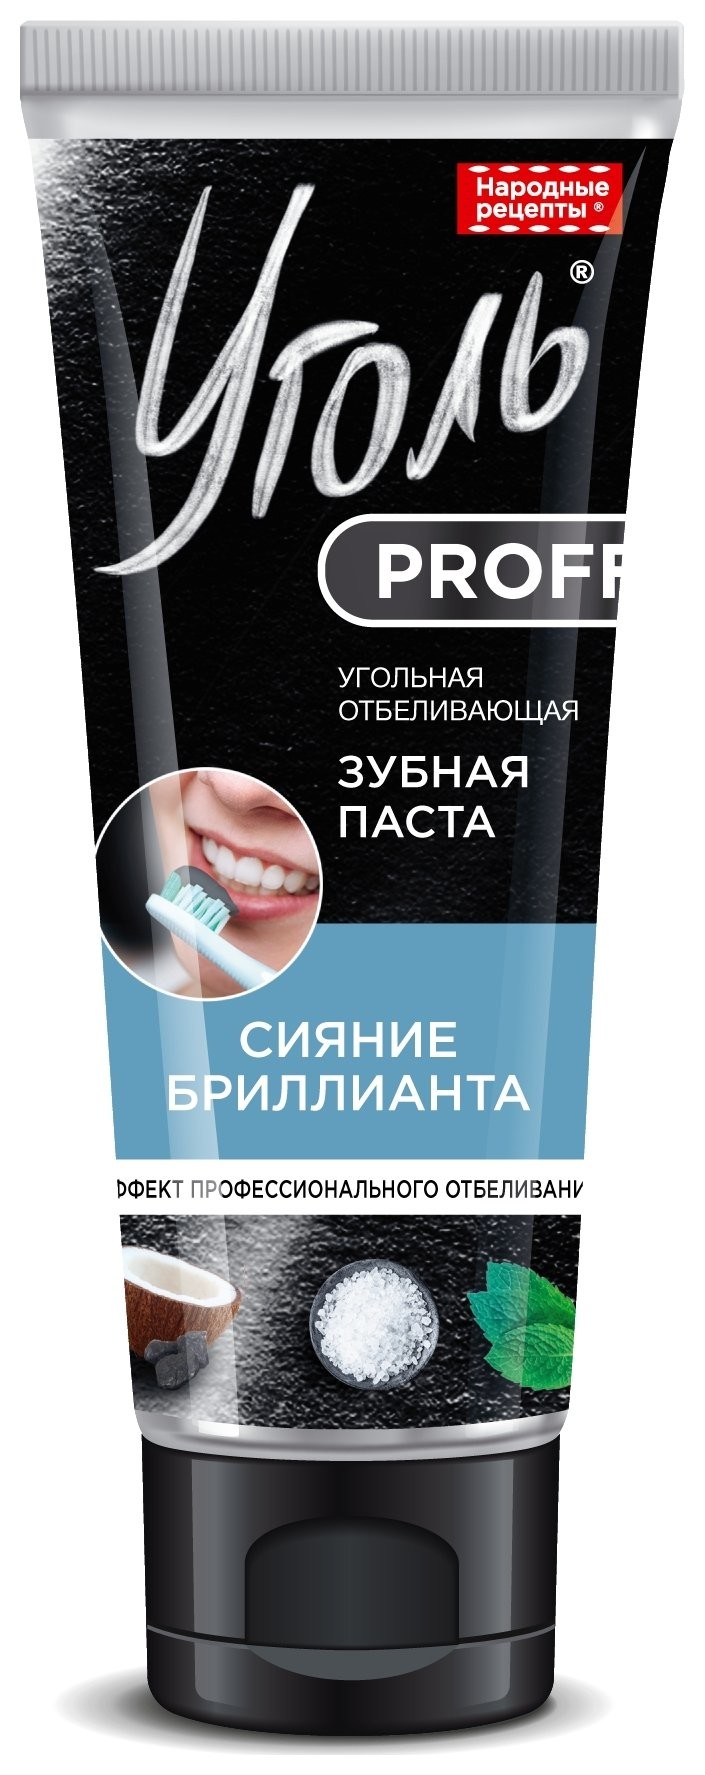 Зубная паста угольная отбеливающая сияние бриллианта отзывы